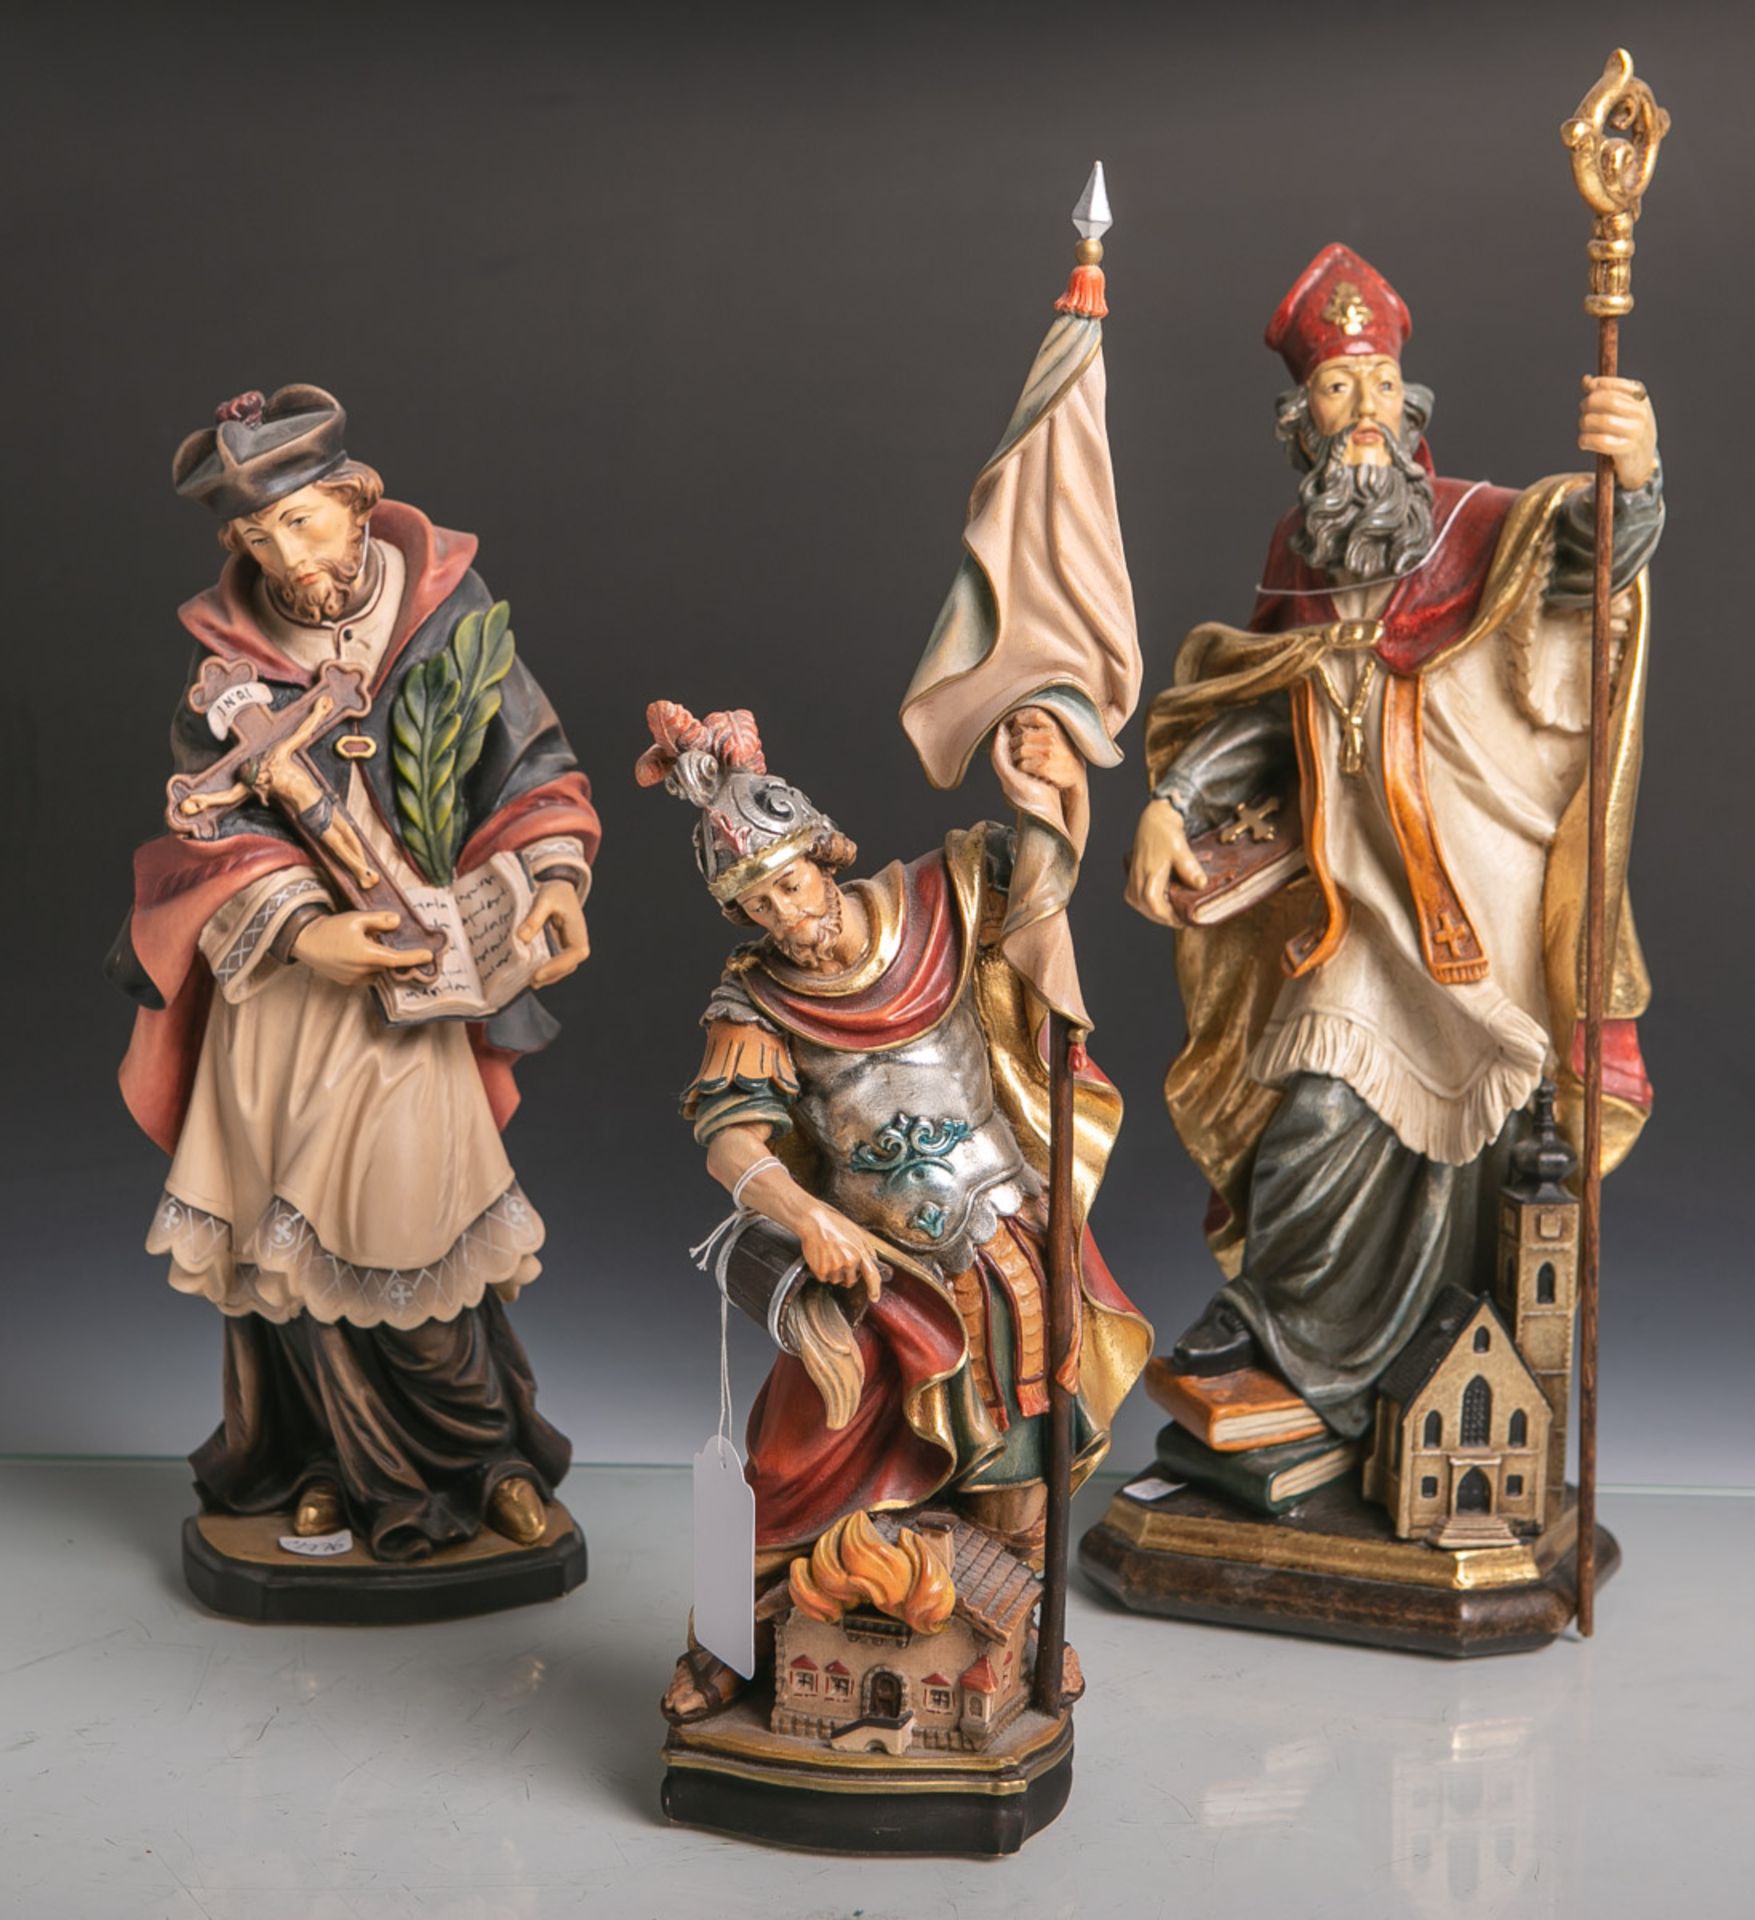 Konvolut von 3 versch. Holzfiguren von Heiligen, vollplastisch geschnitzt, polychrom